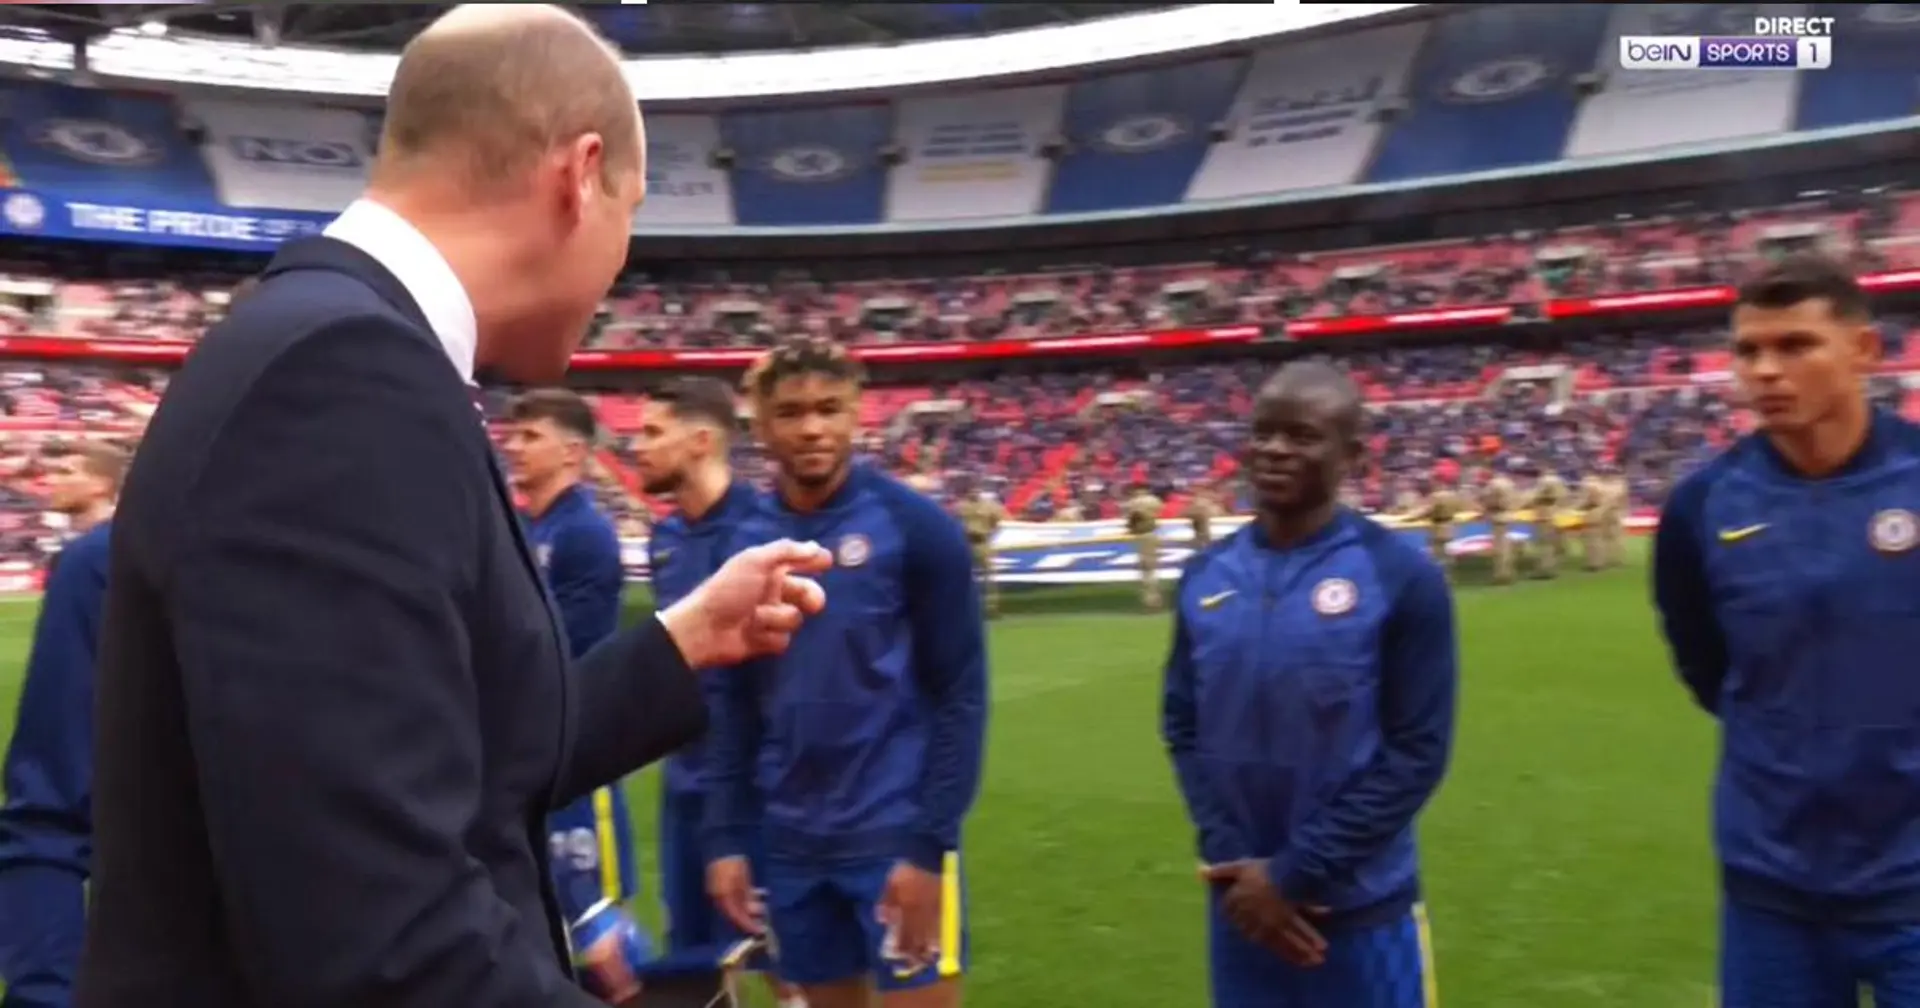 Hermoso momento entre el príncipe William y N'Golo Kante captado por la cámara antes de la final de la Copa FA